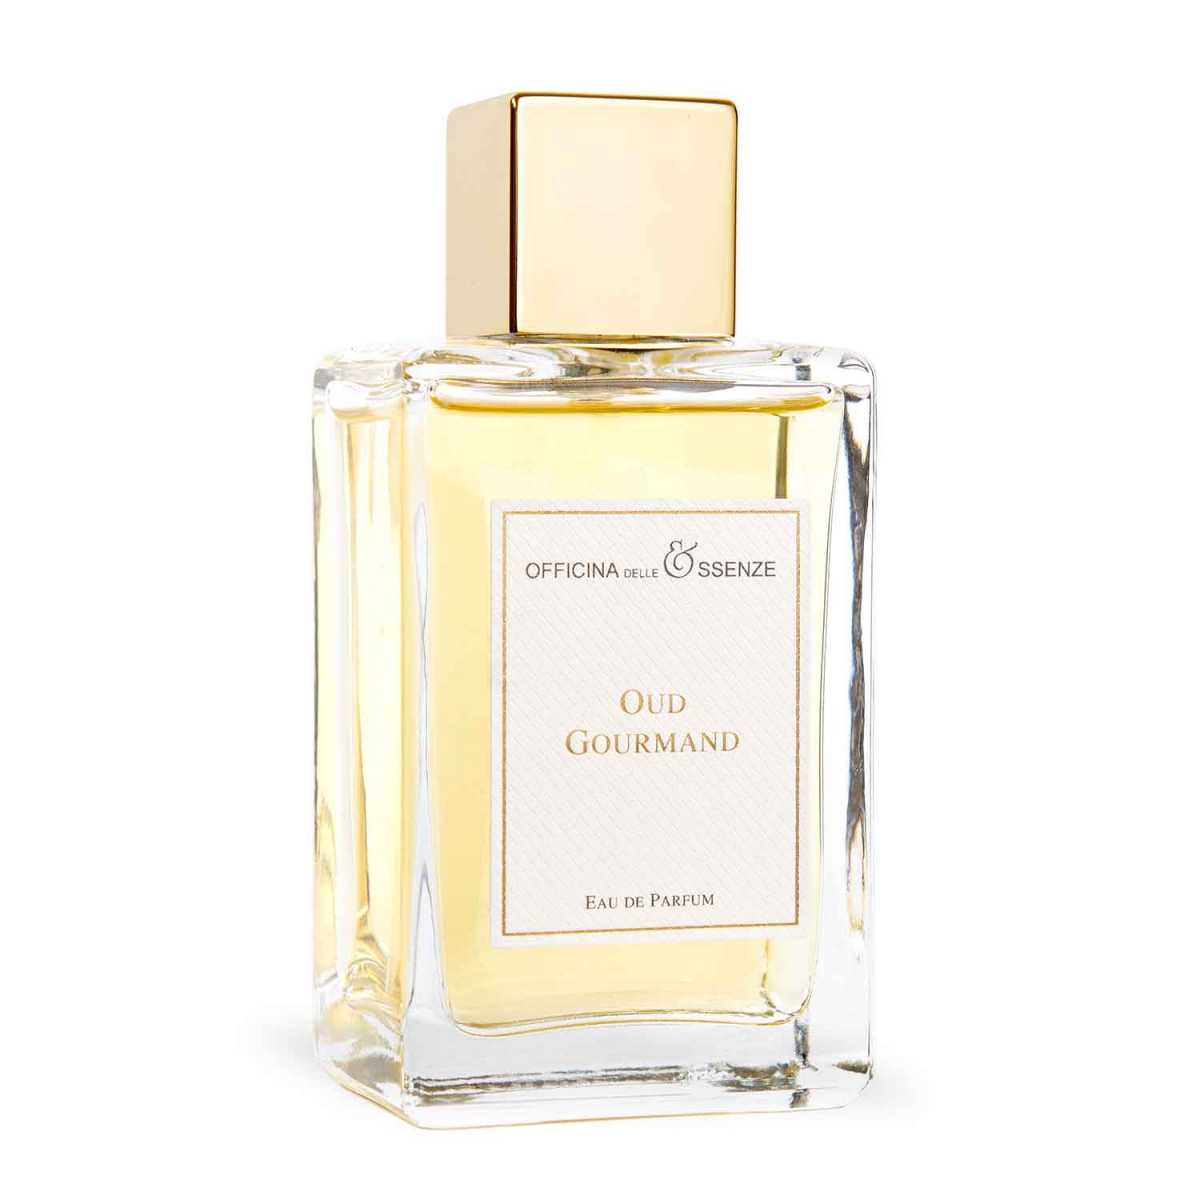 Oud Gourmand Eau de Parfum by Officina delle Essenze